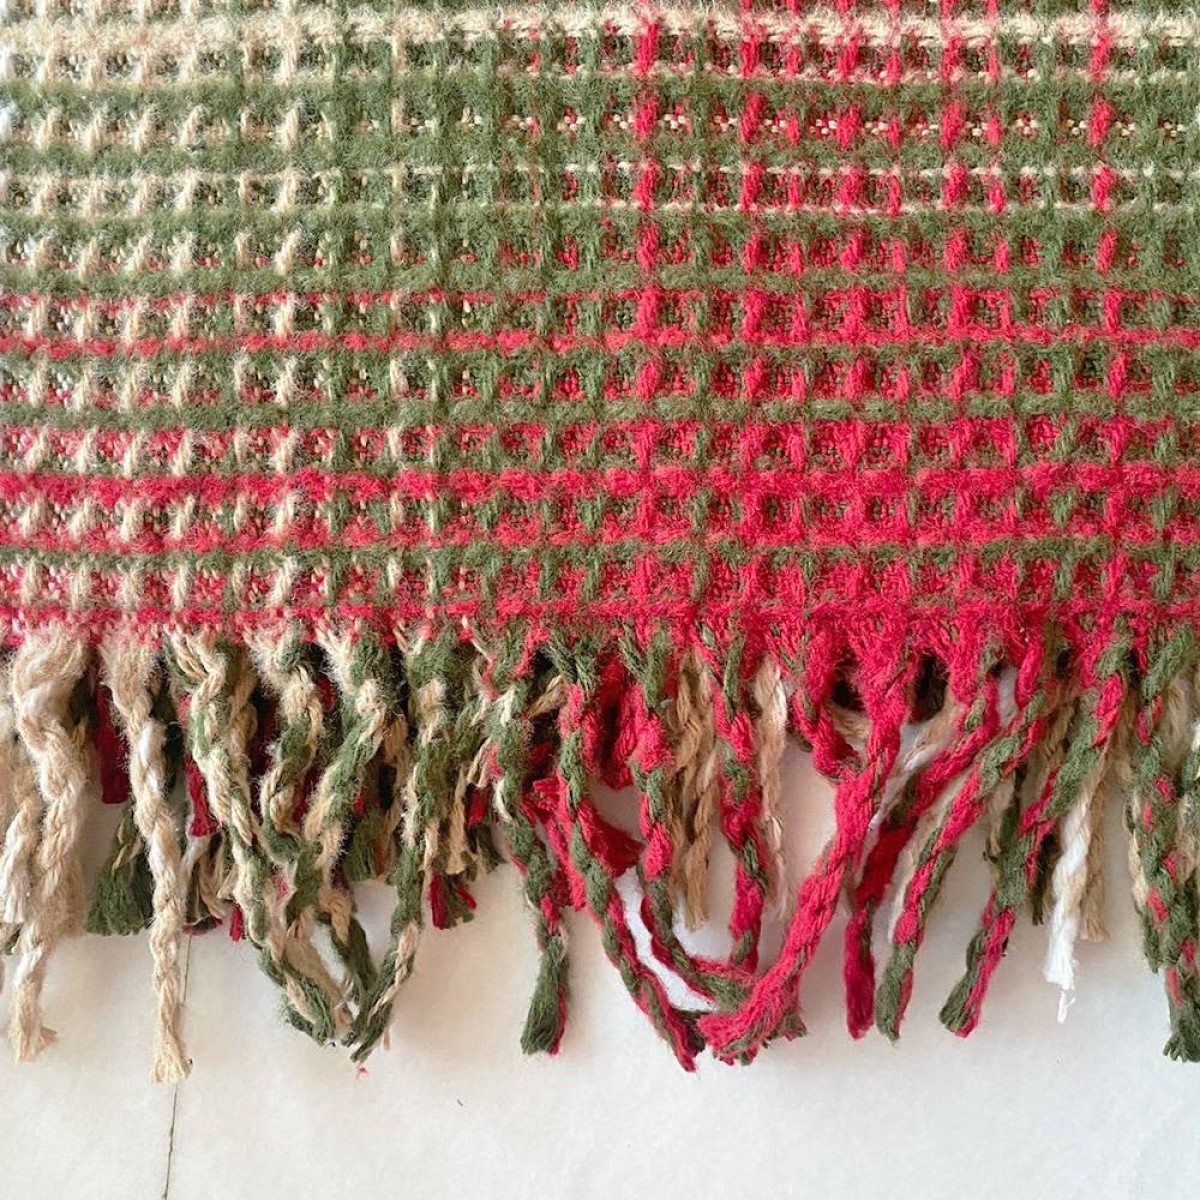 Κουβέρτα - Ριχτάρι από βαμβάκι και ακρυλικό 150x200cm καρώ κόκκινο-πράσινο-μπεζ χρώμα TNS 39-800-0025